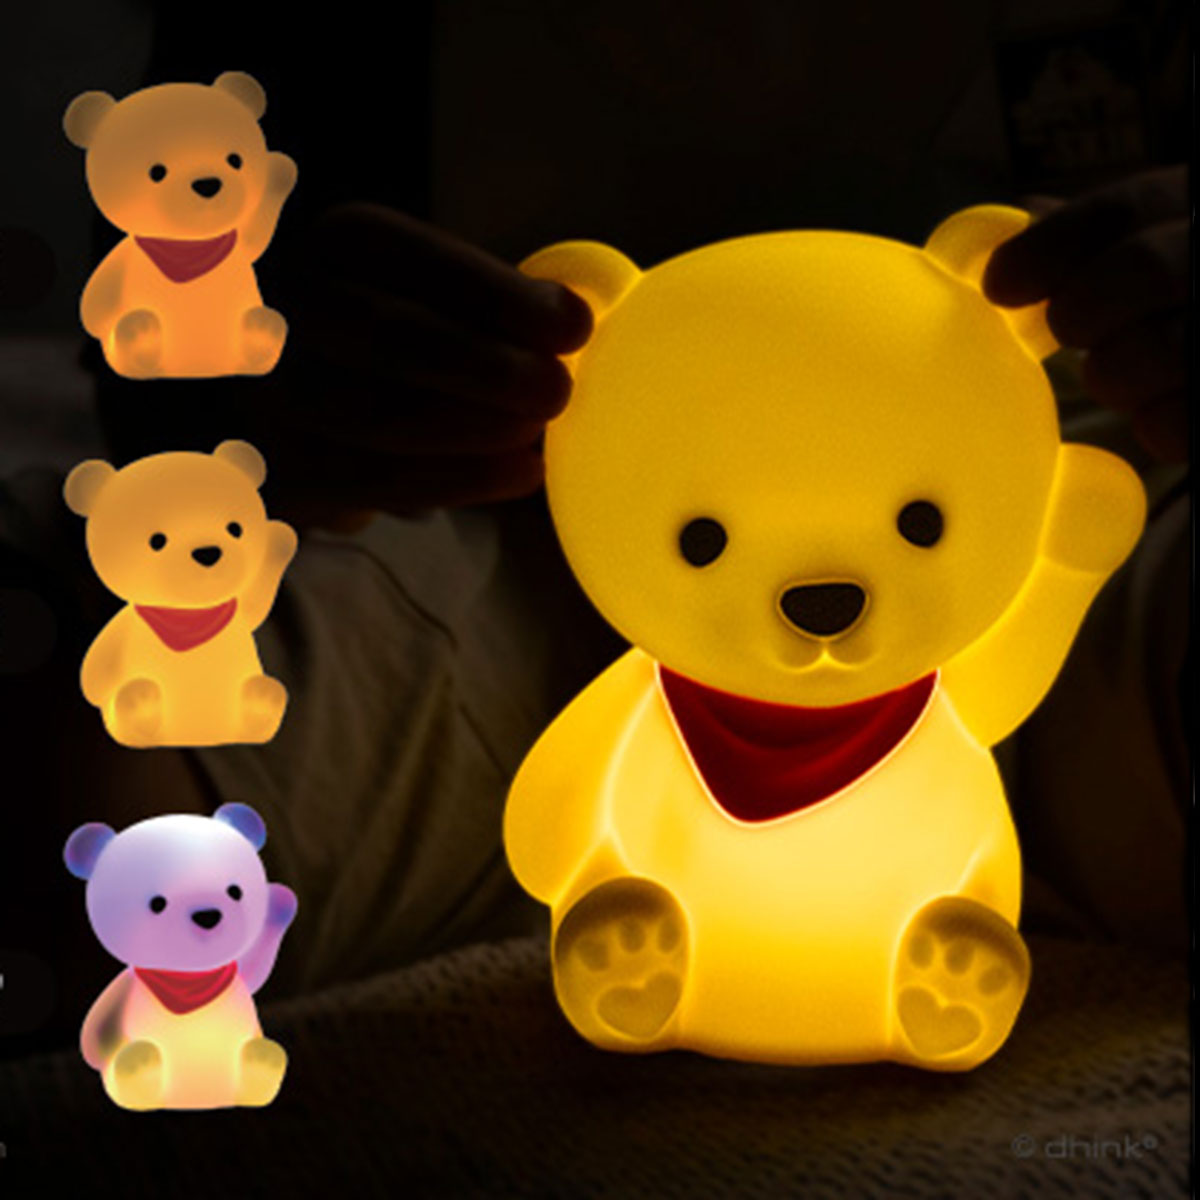 Veilleuse bébé ours sans fil touch souple LED multicolore dimmable